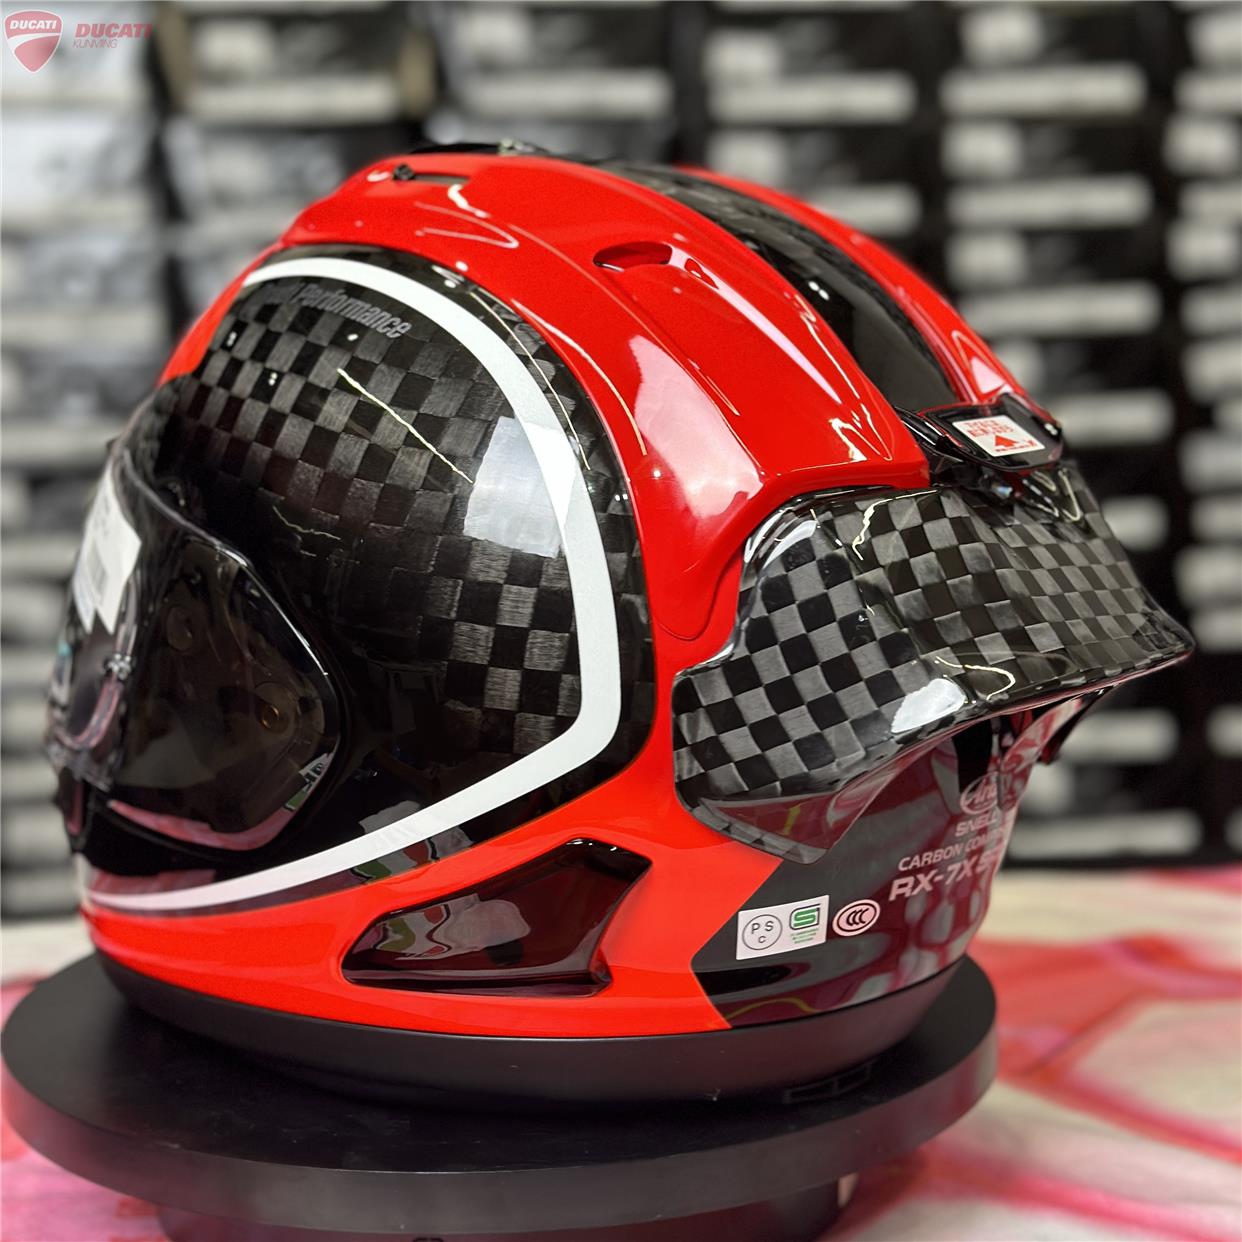 AraiRX7X通用头盔碳纤维尾翼扰流风阻轻量化赛道赛车装饰摩托车